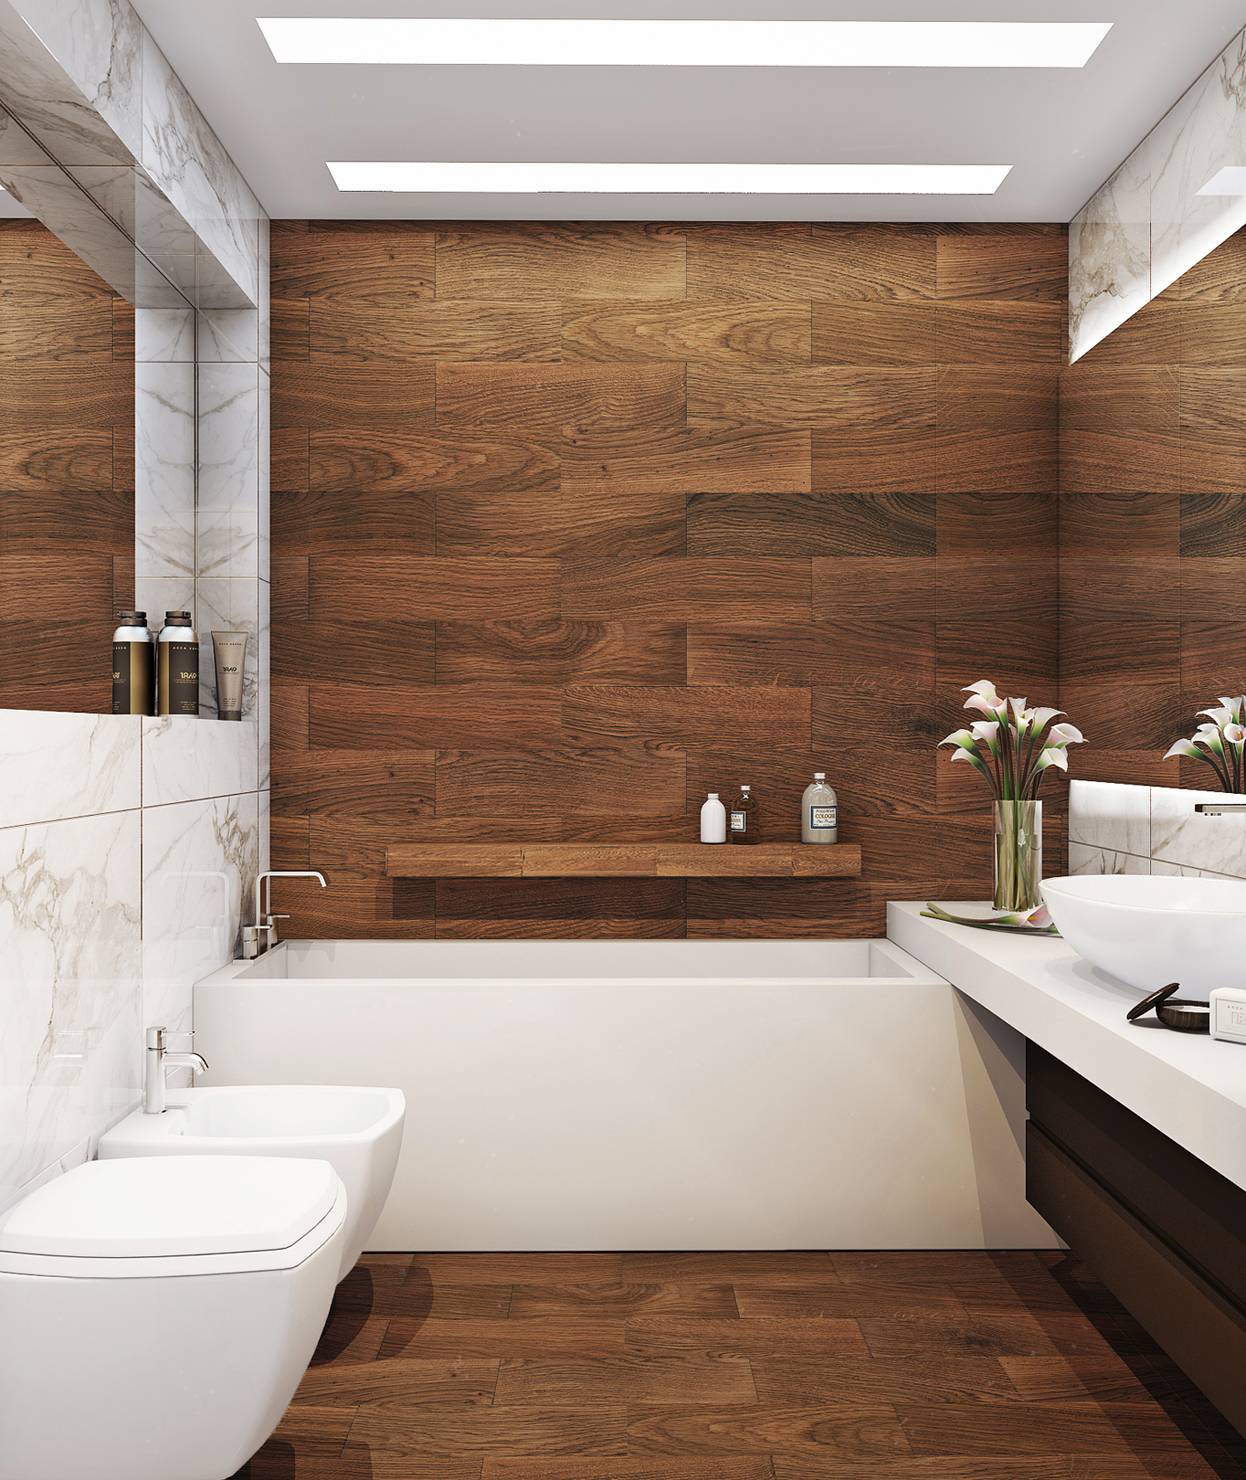 Дизайн и отделка ванной комнаты плиткой (132 фото): варианты керамической облицовки на площади 4 м2, идеи для оформления интерьера помещения